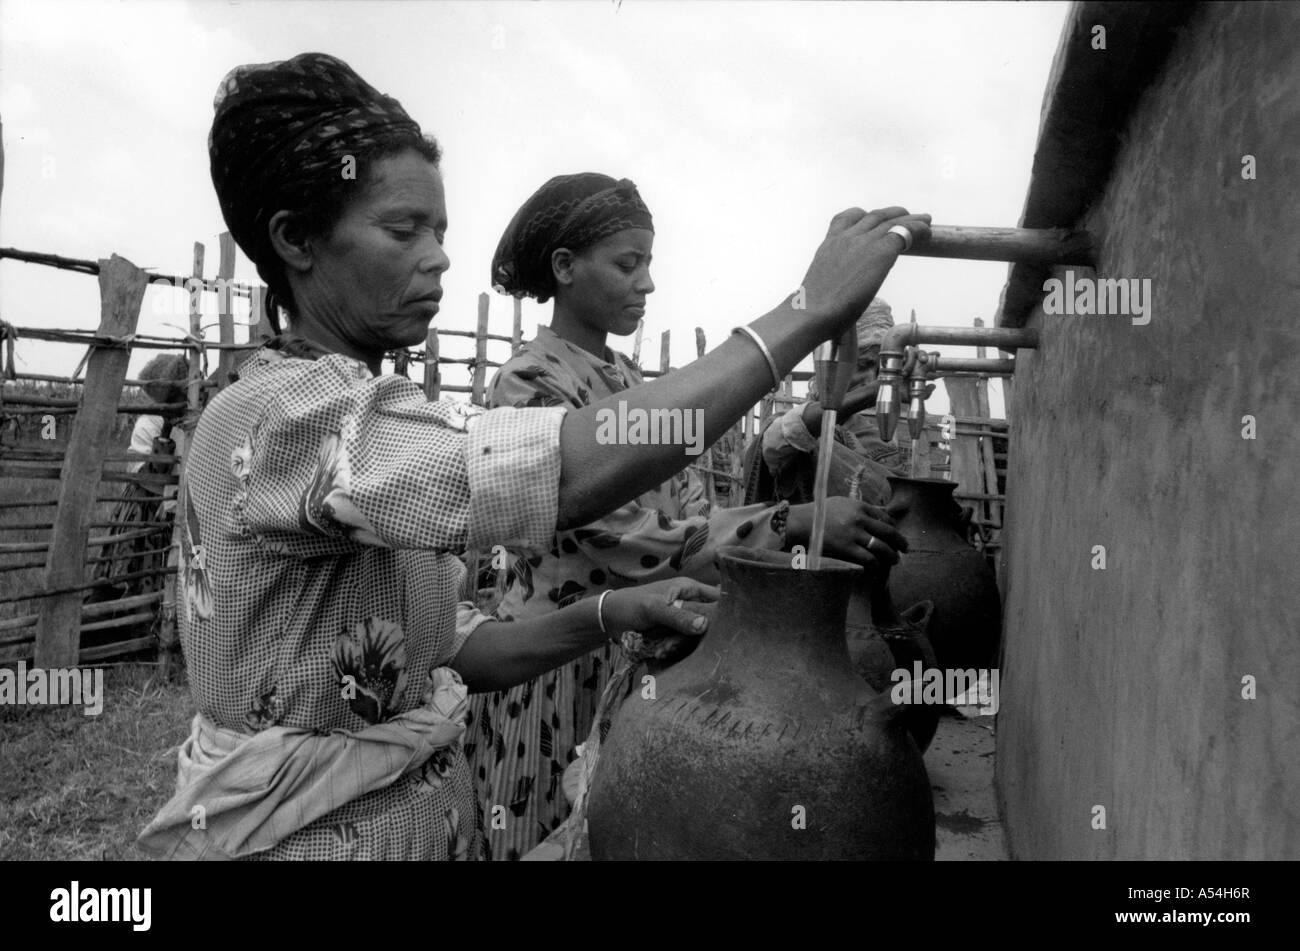 Painet ac1500 noir et blanc femmes prenant de l'eau robinet public village western shoa Éthiopie images bw pays développe Banque D'Images